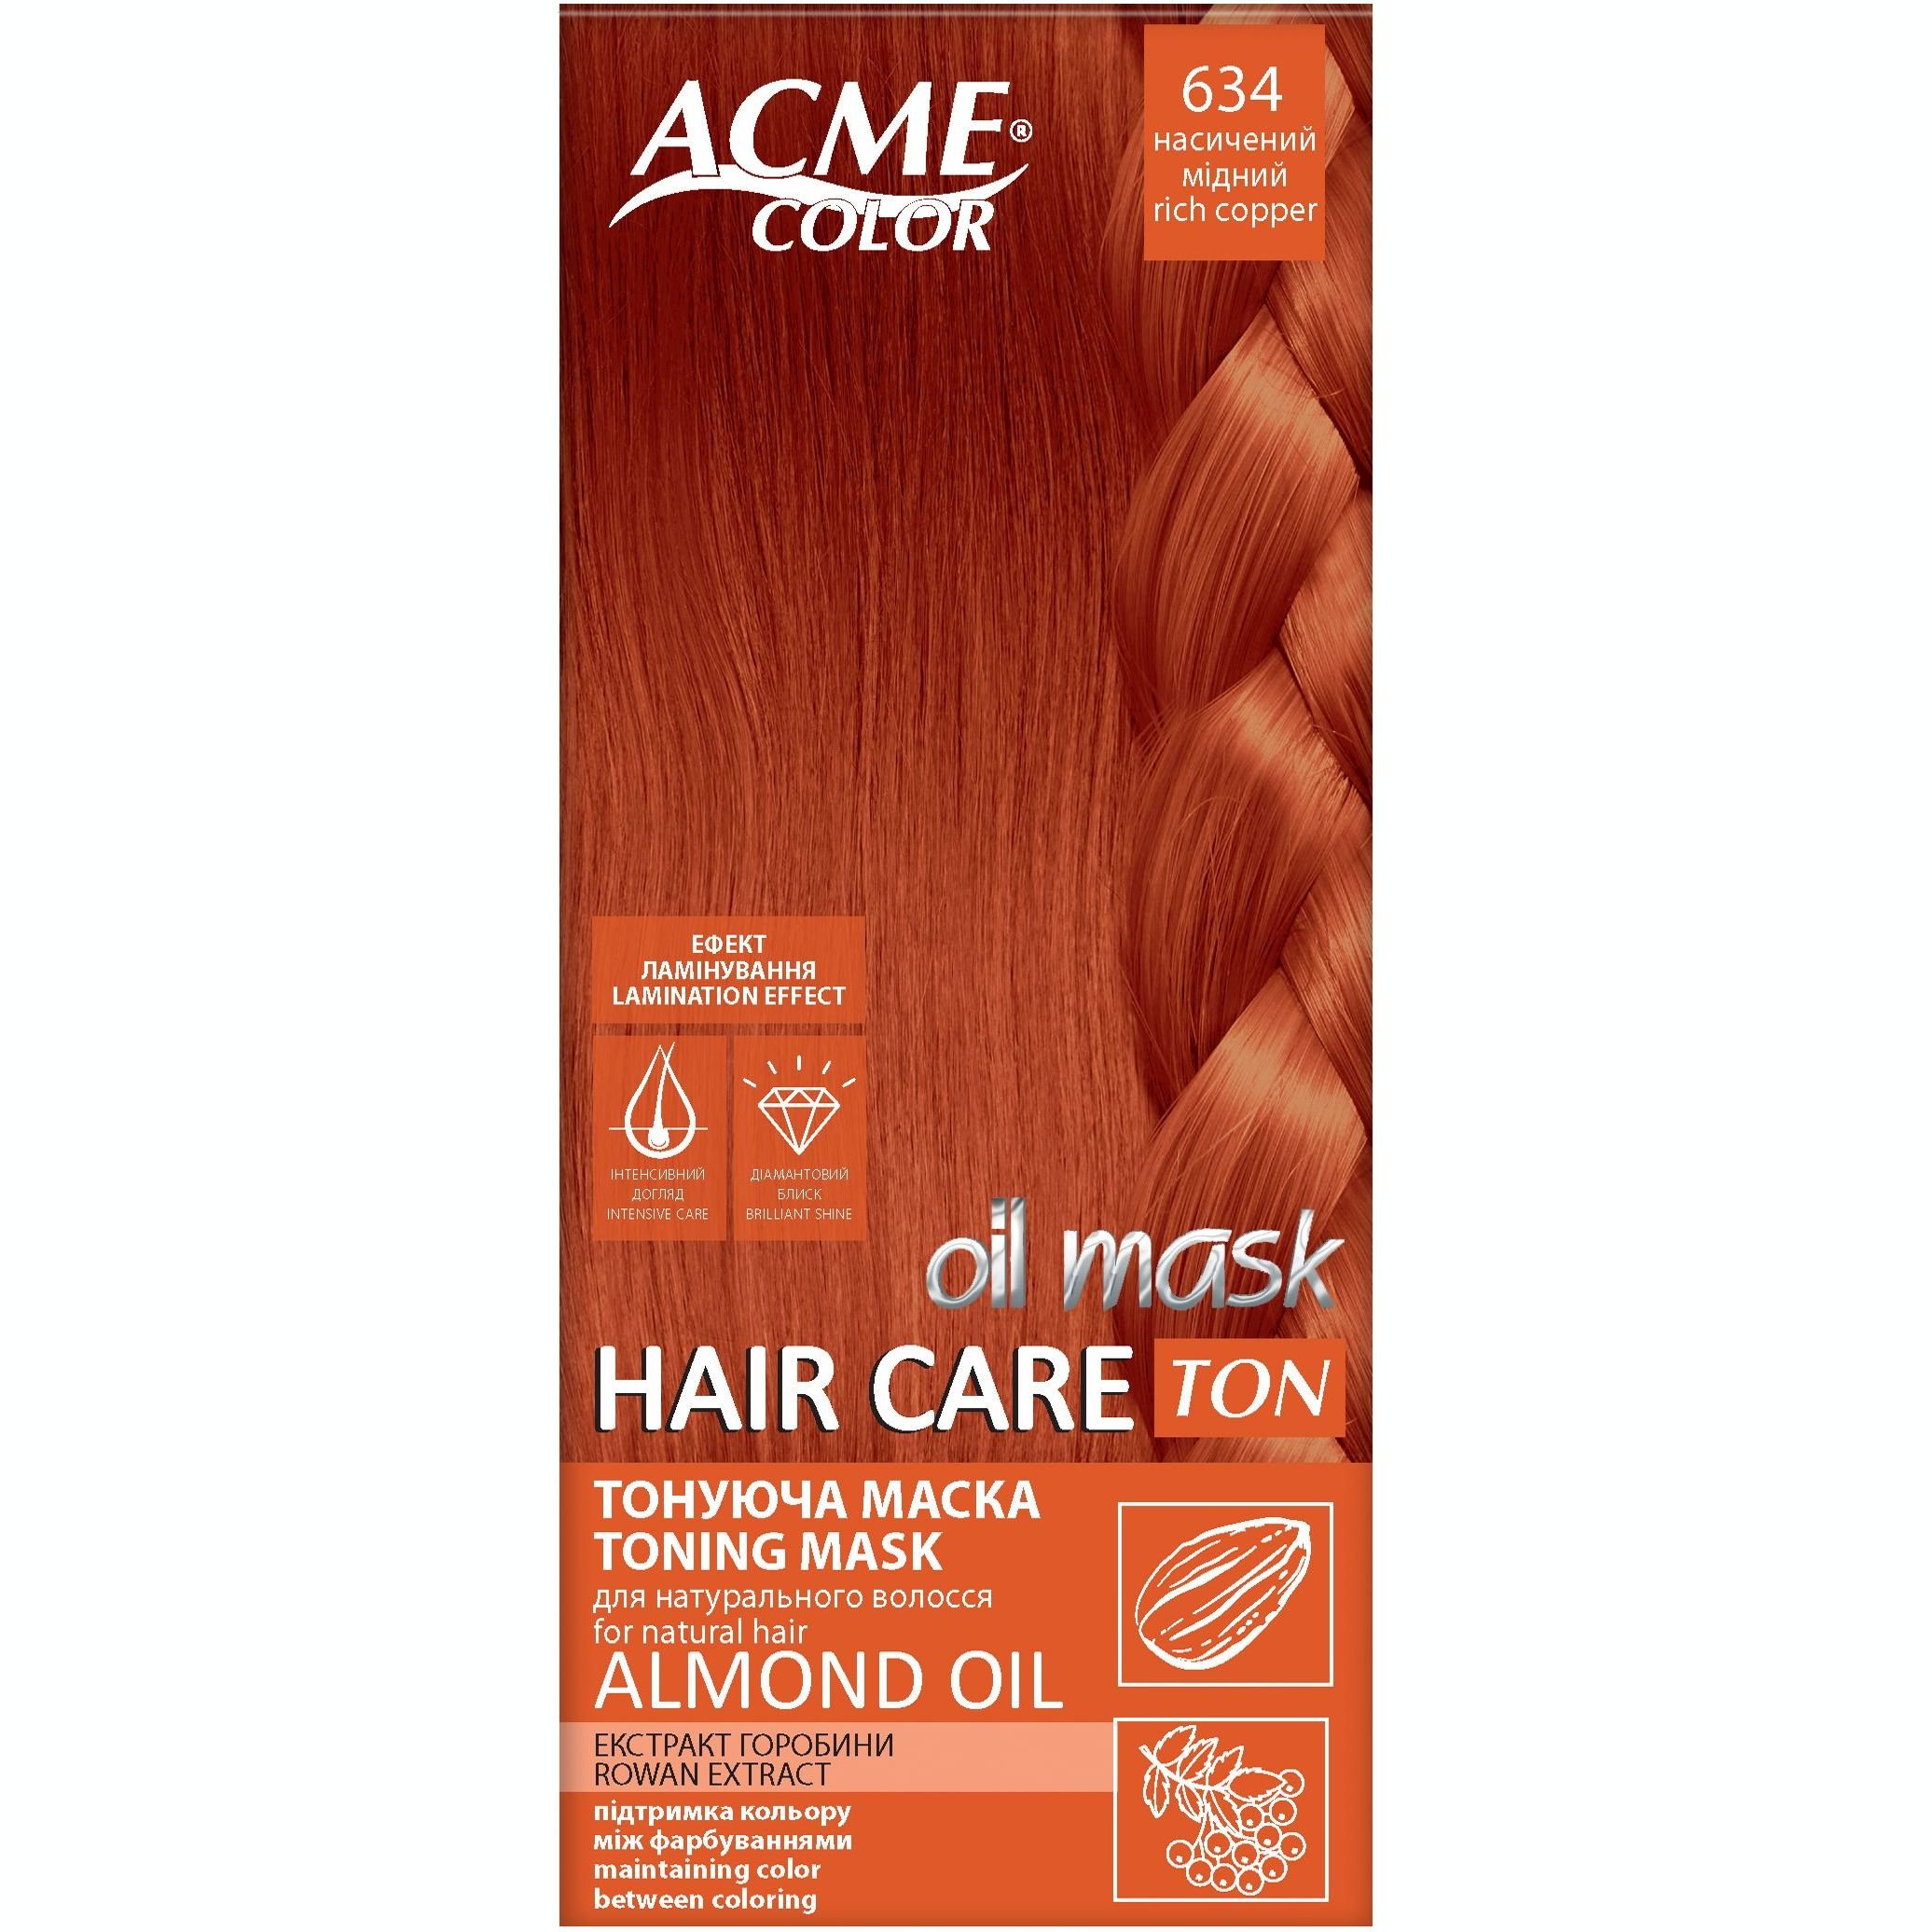 Тонуюча маска для волосся Acme Color Hair Care Ton oil mask, відтінок 634, насичений мідний, 30 мл - фото 1